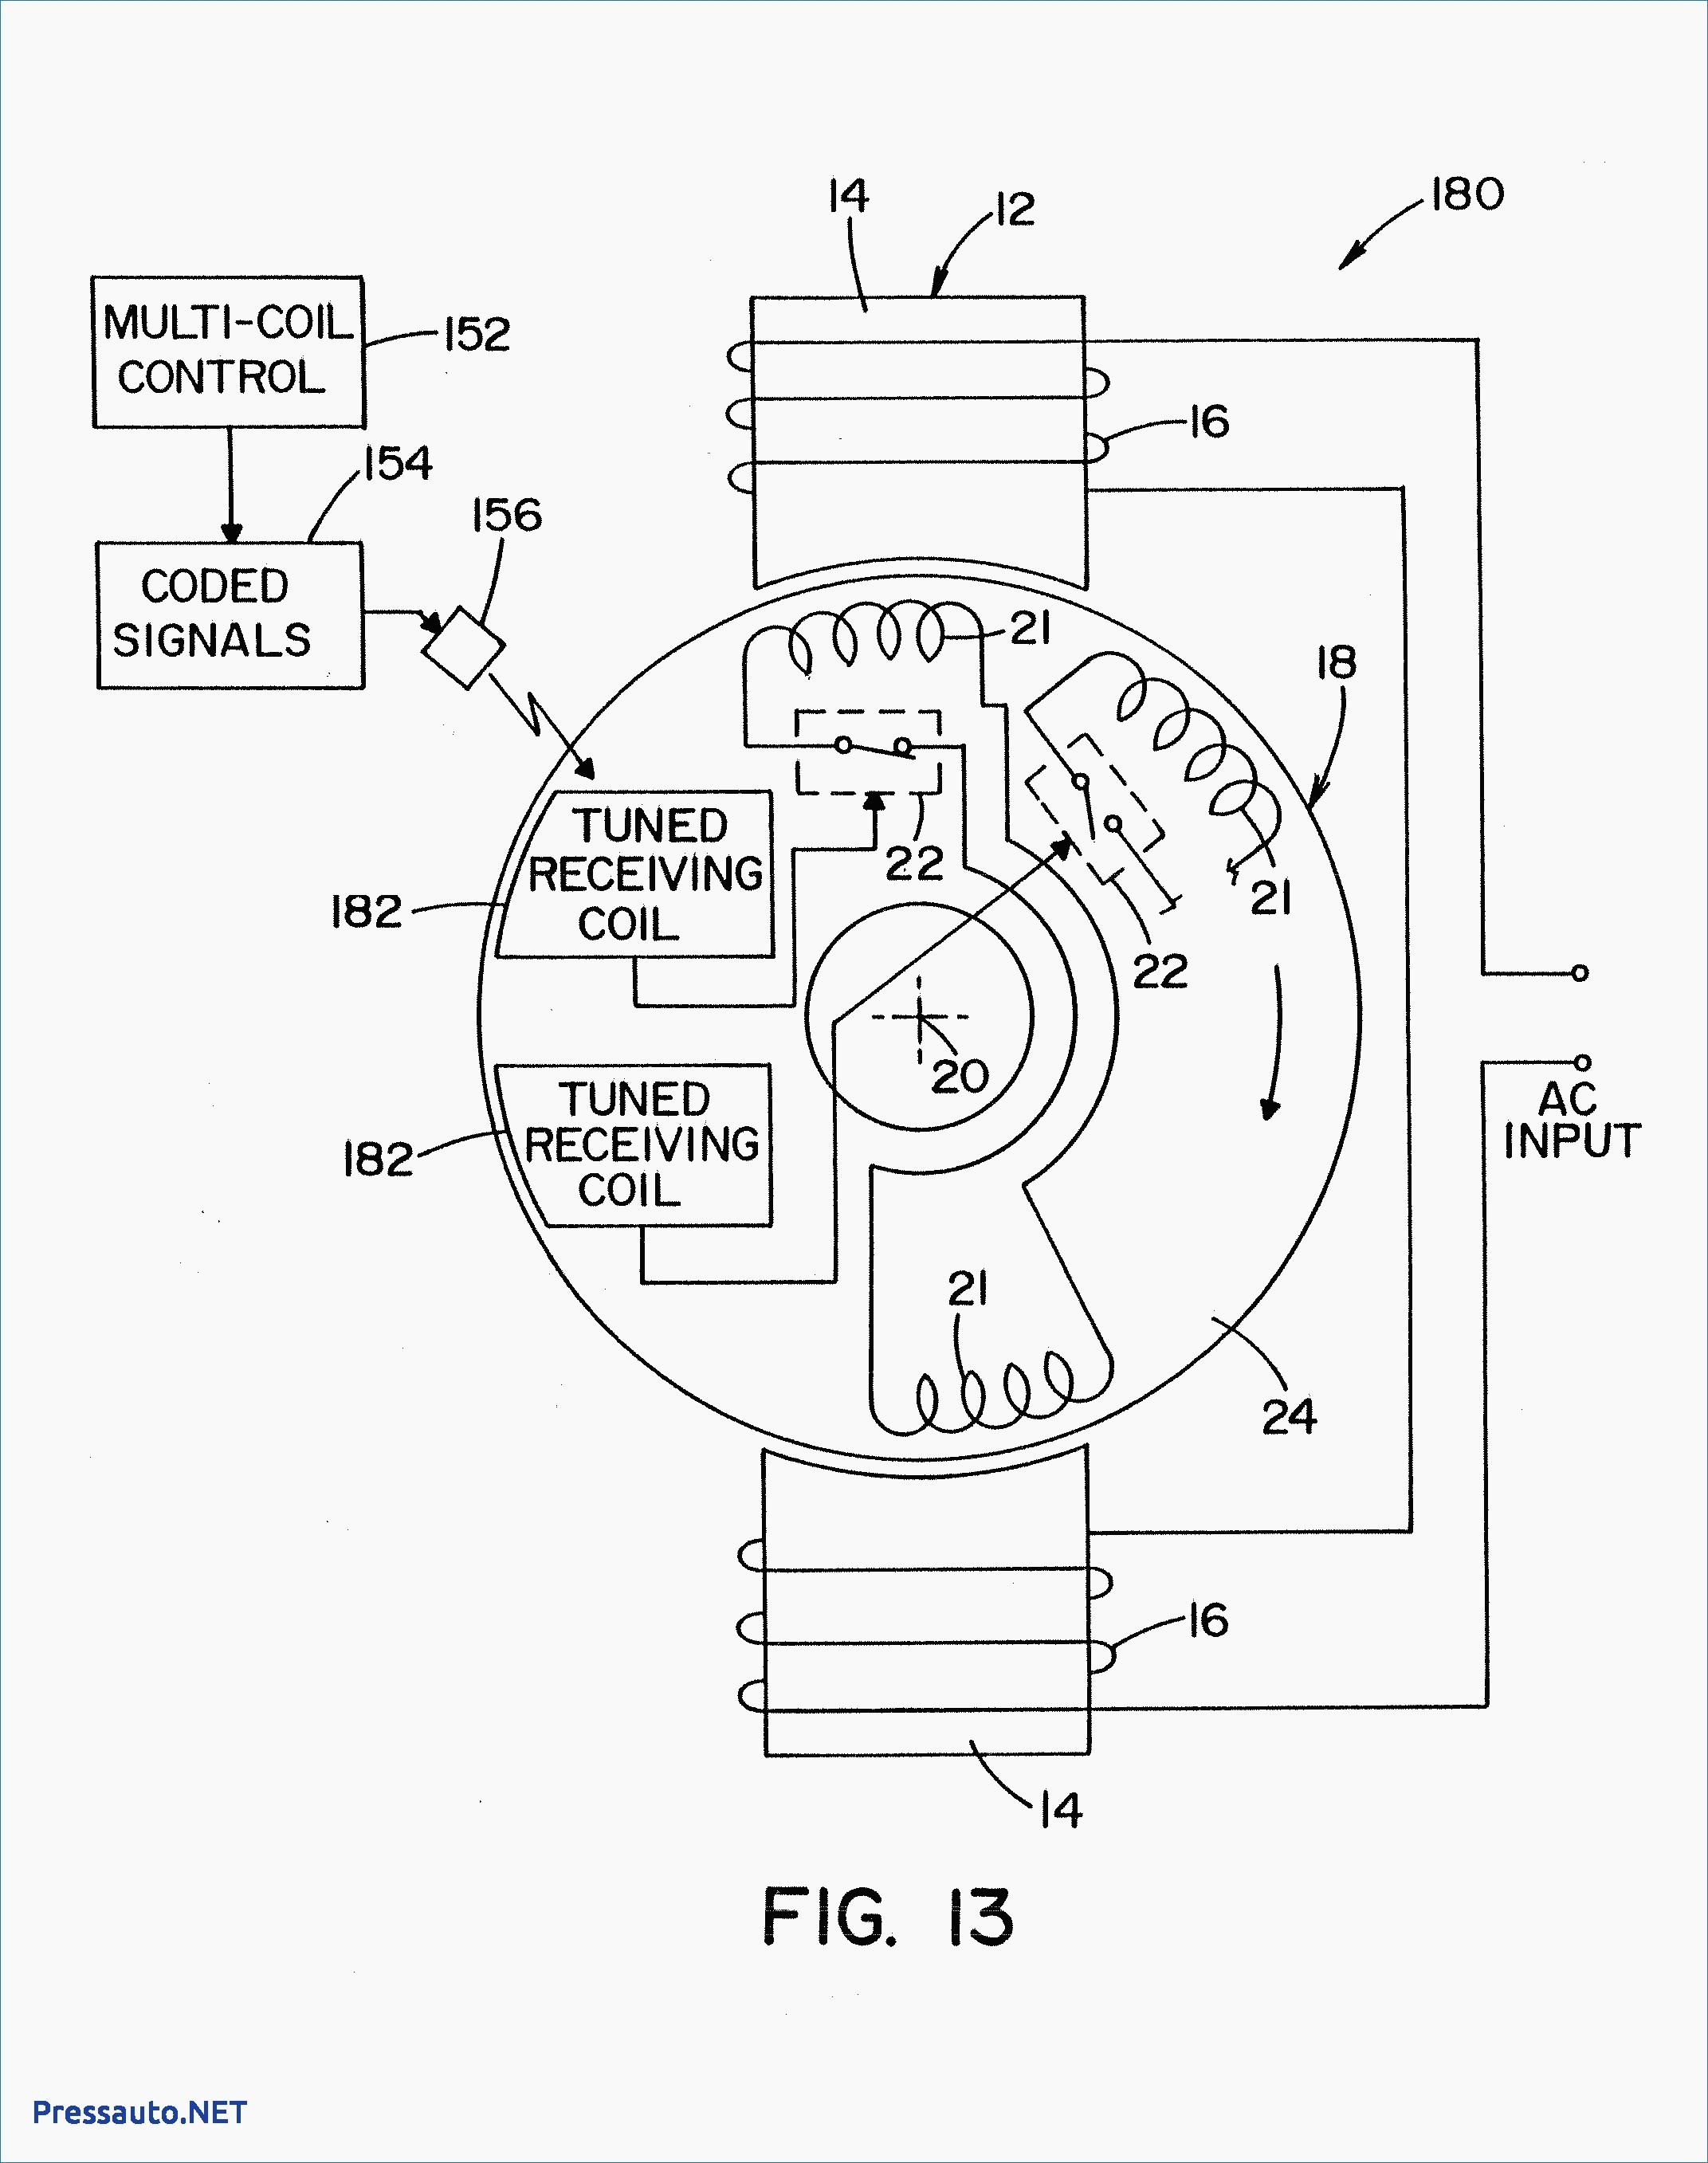 Wiring Diagram Electric Fan Motor Best Wiring Diagram for Ac Condenser Fan Motor Best 3 Wire